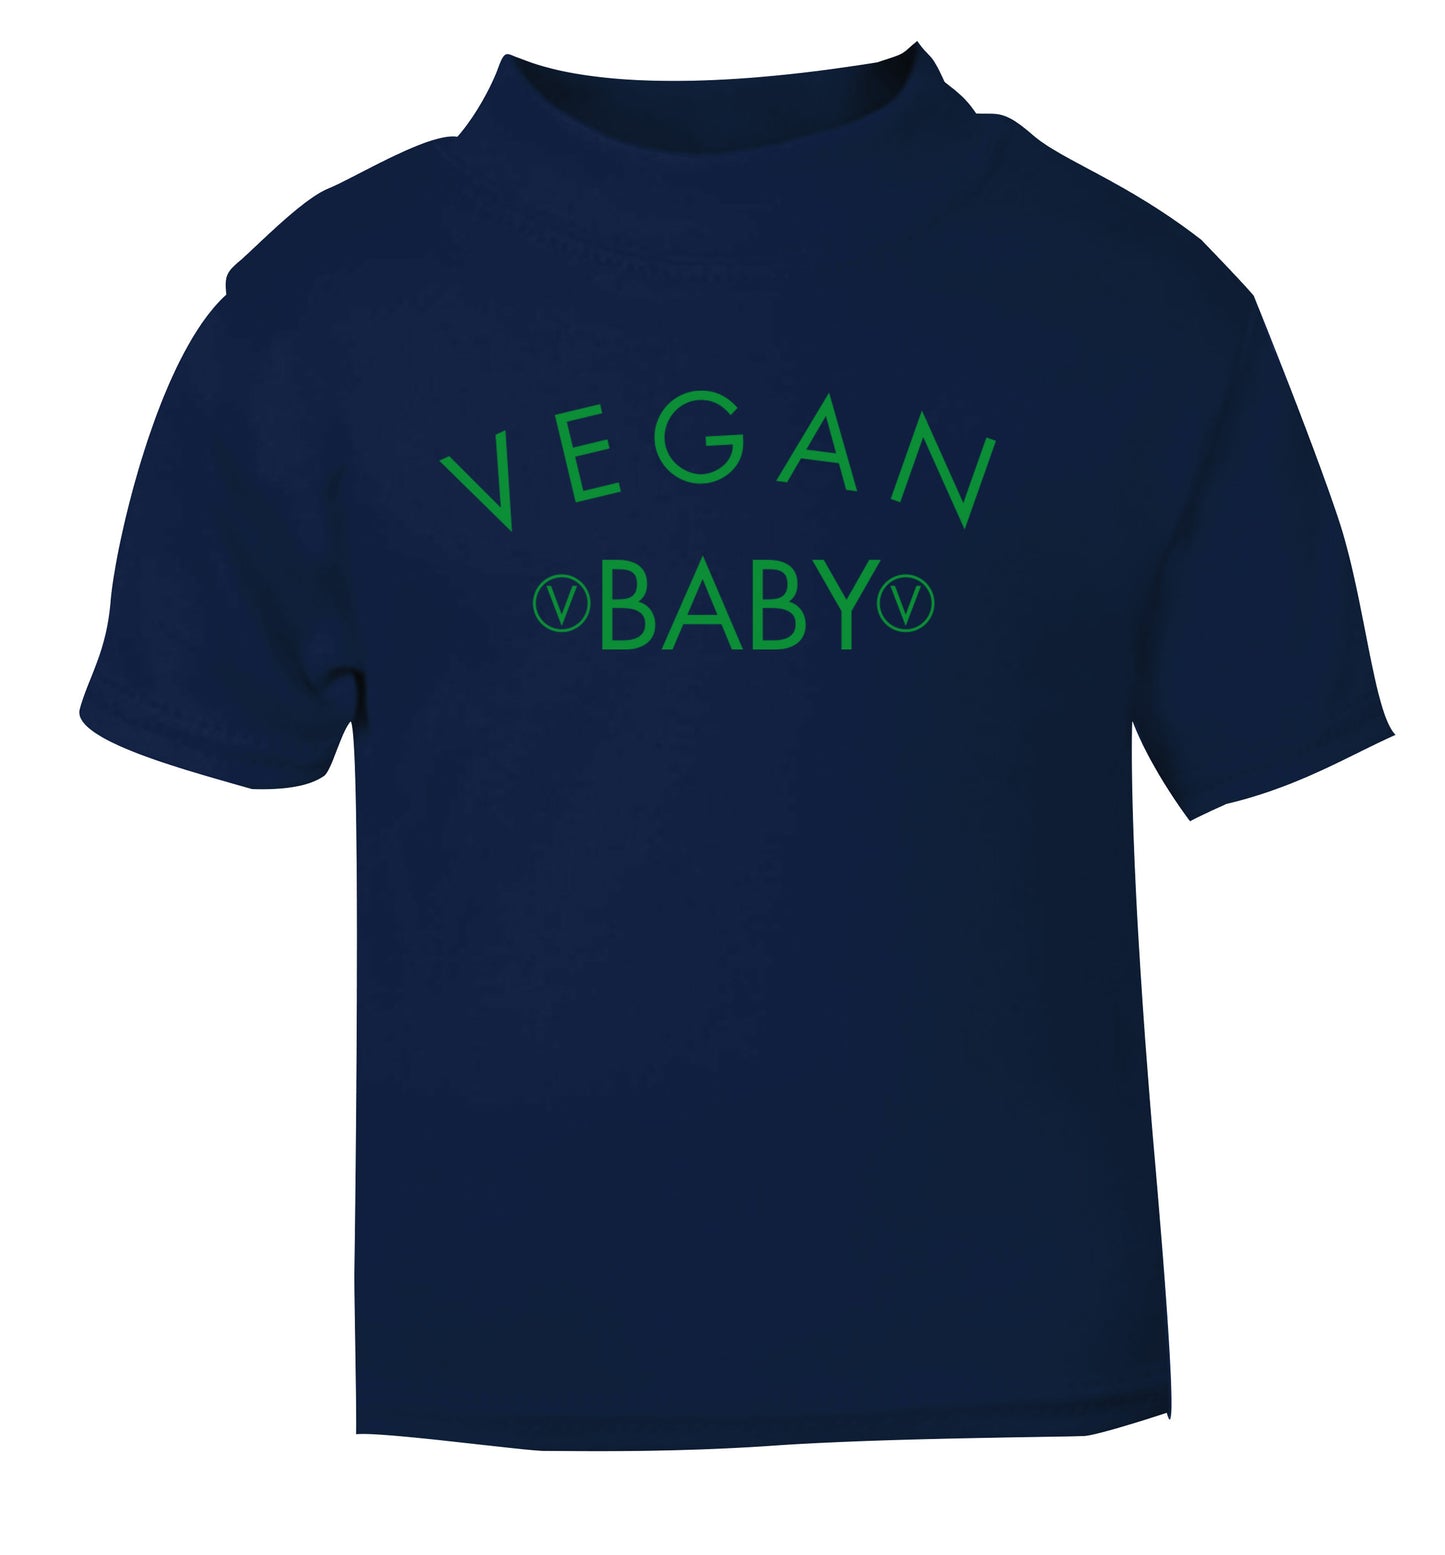 Vegan baby navy Baby Toddler Tshirt 2 Years